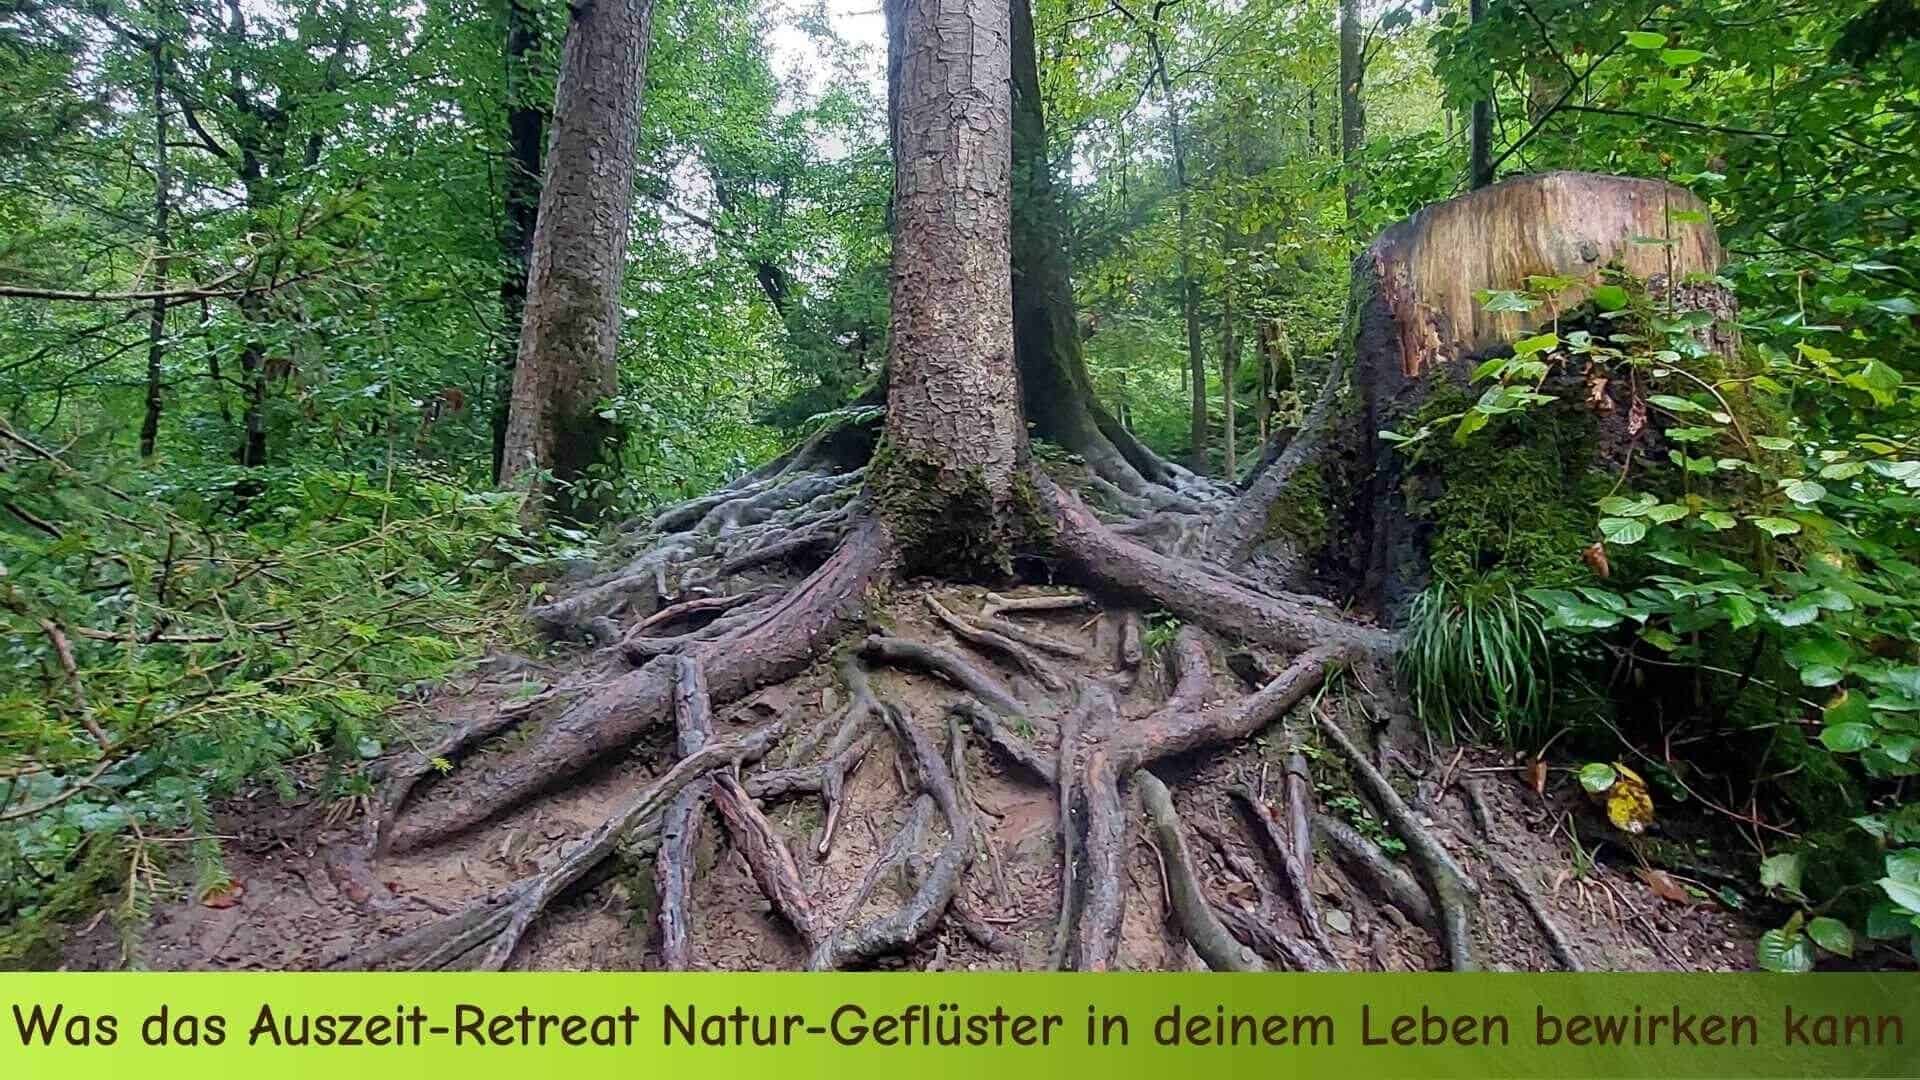 Ein Baum im Wald mit unglaublich vielen Wurzeln